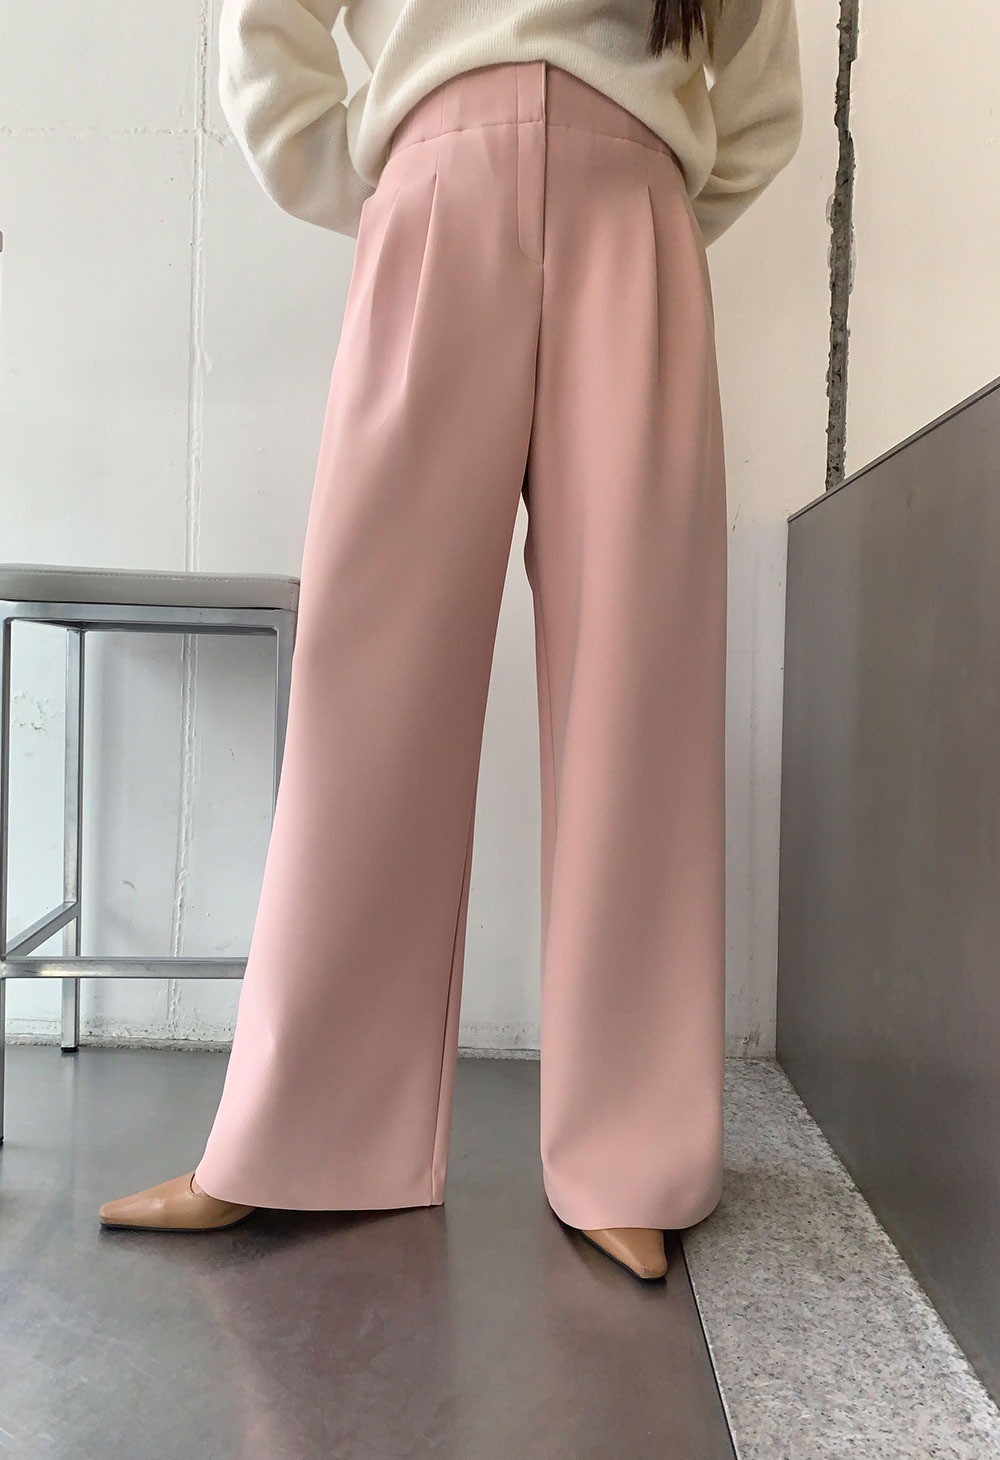 豹纹裤子 - 浅粉色